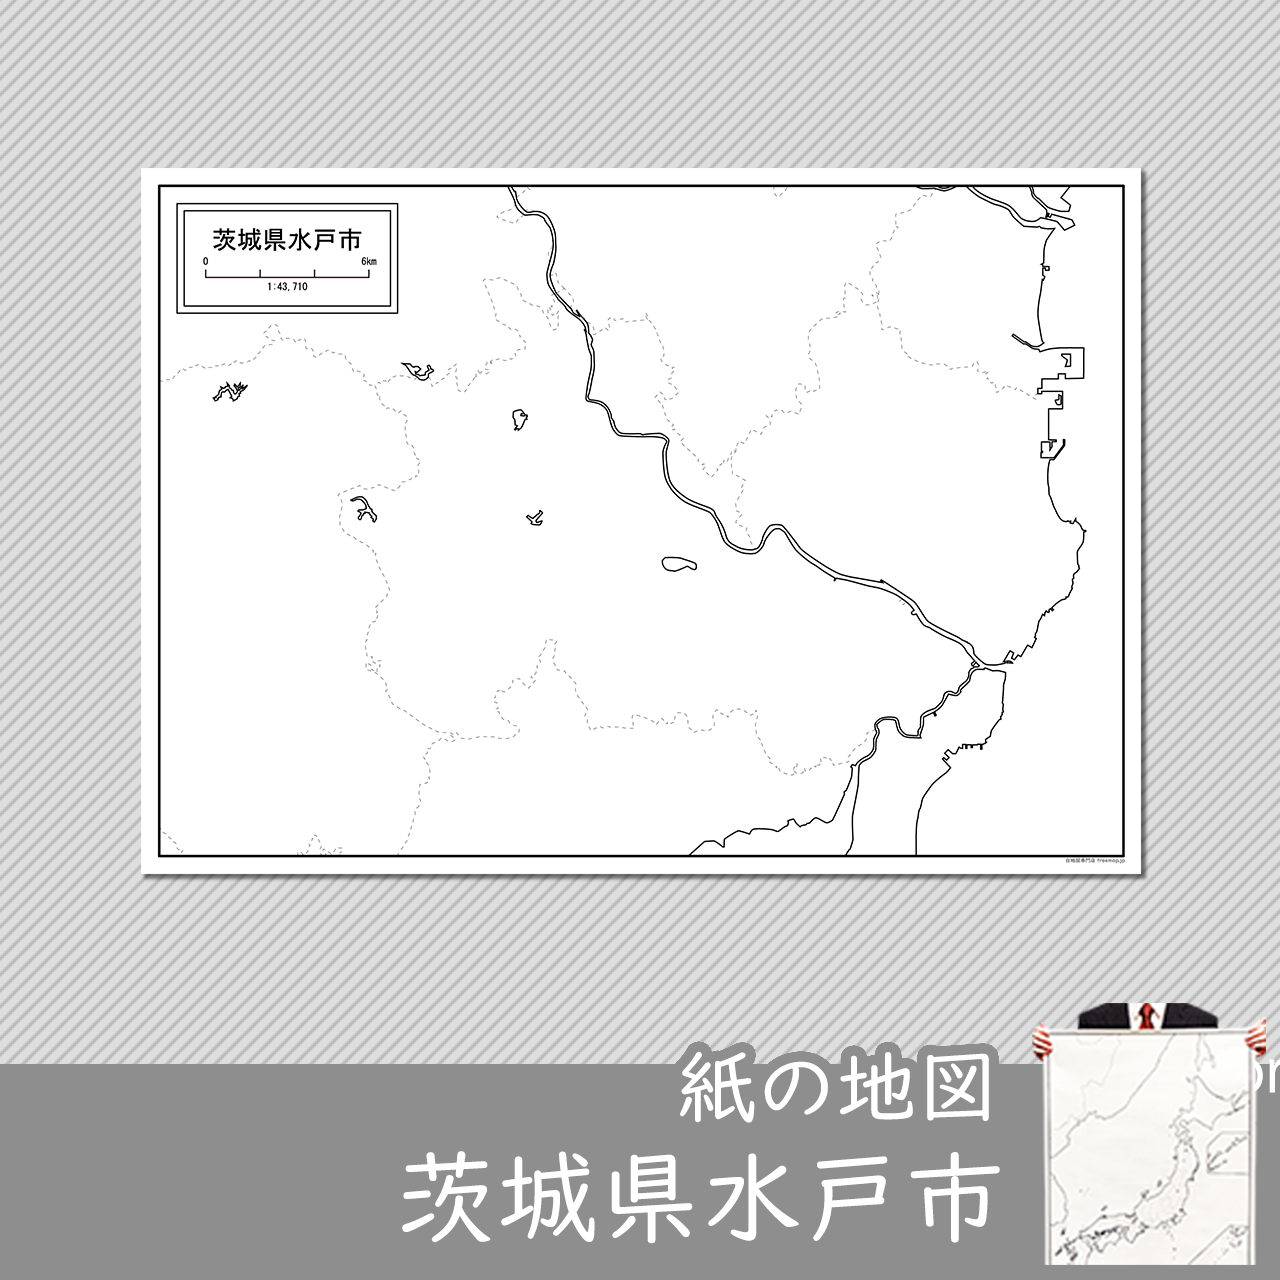 水戸市の紙の白地図のサムネイル